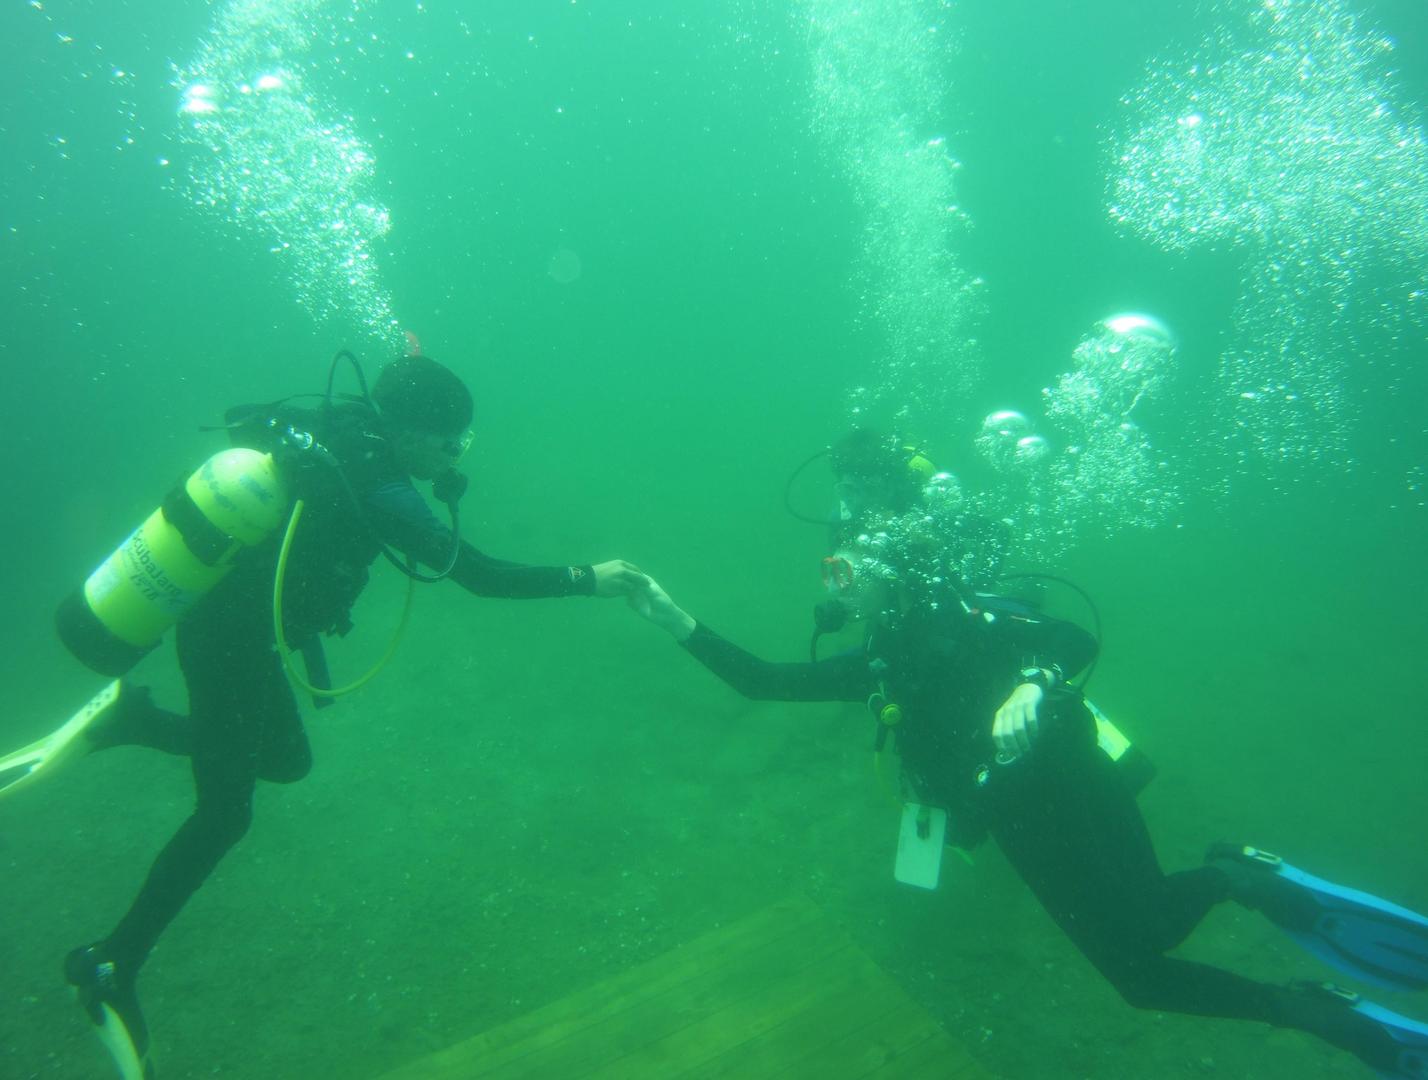  Underwater Thrills at Diving Quarry Virginia 